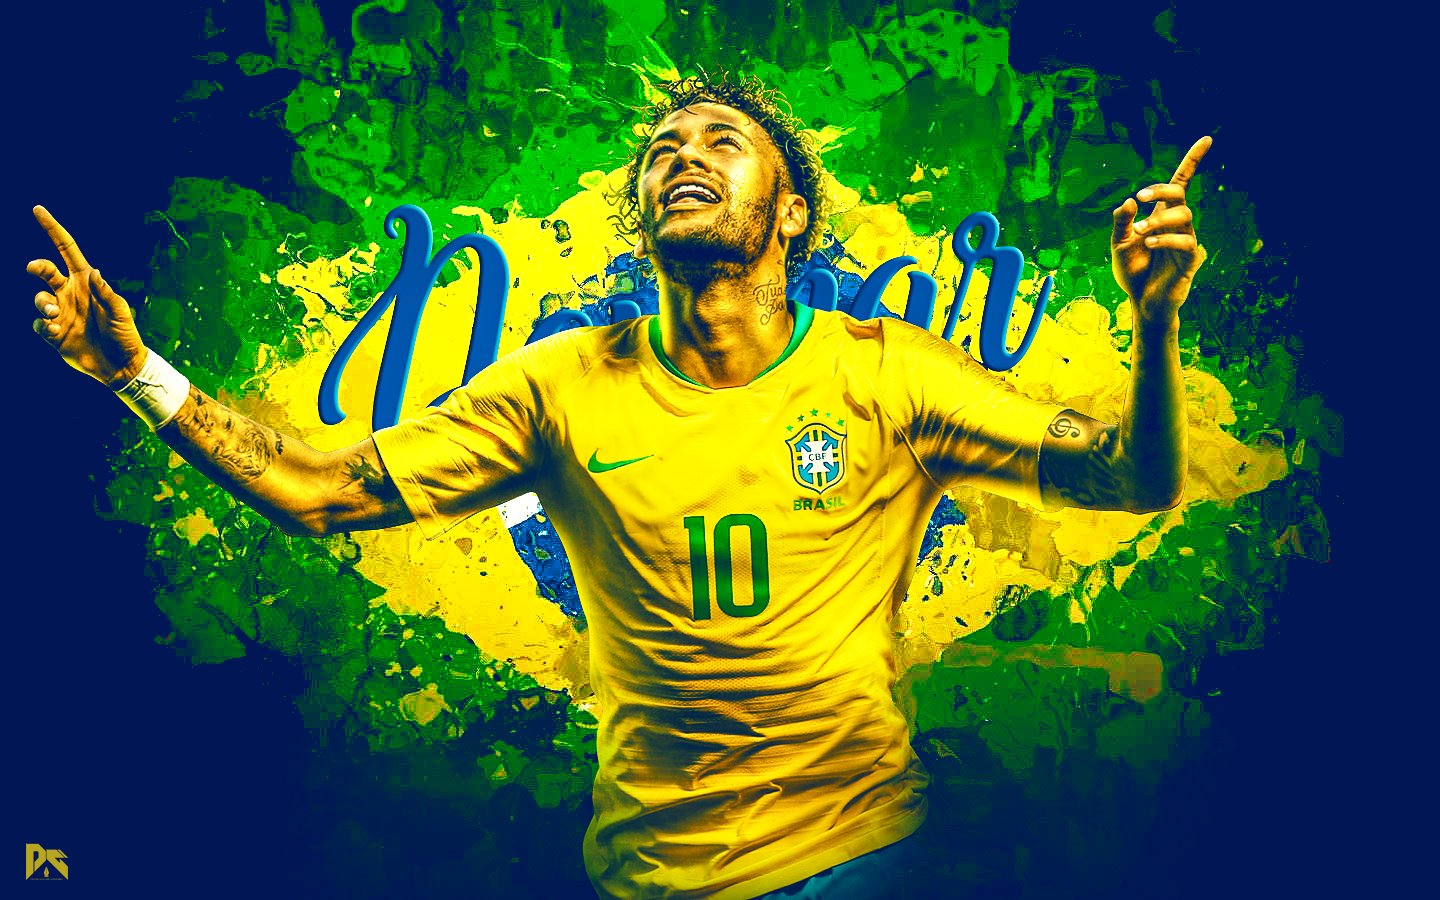 FIFA Neymar Jr In Yellow Jersey Backgrounds, neymar old HD wallpaper |  Pxfuel